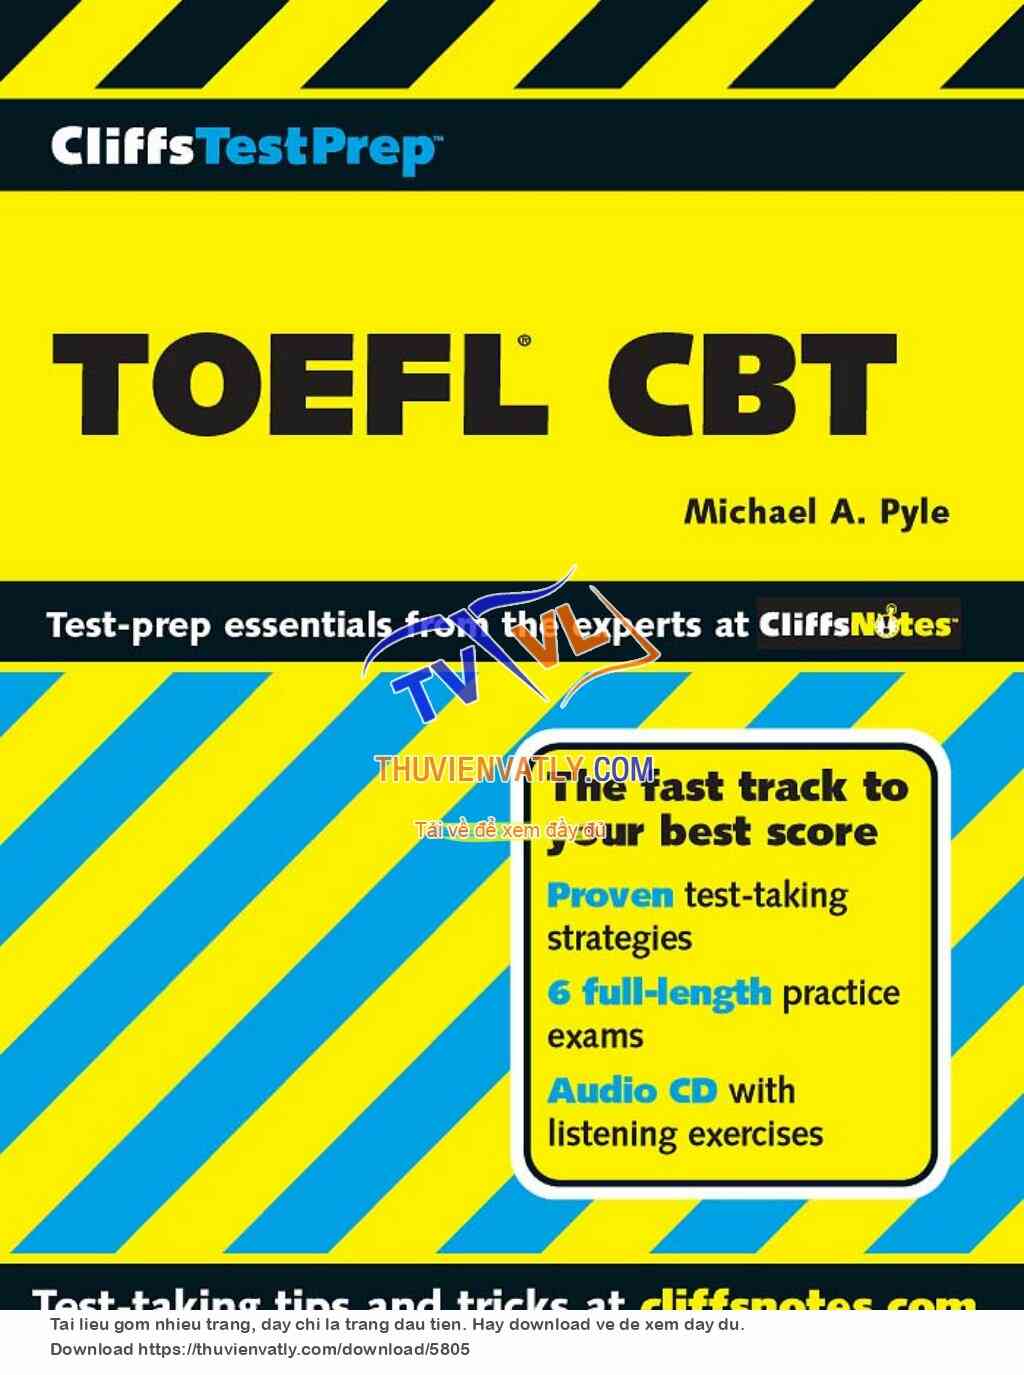 TOEFL CBT